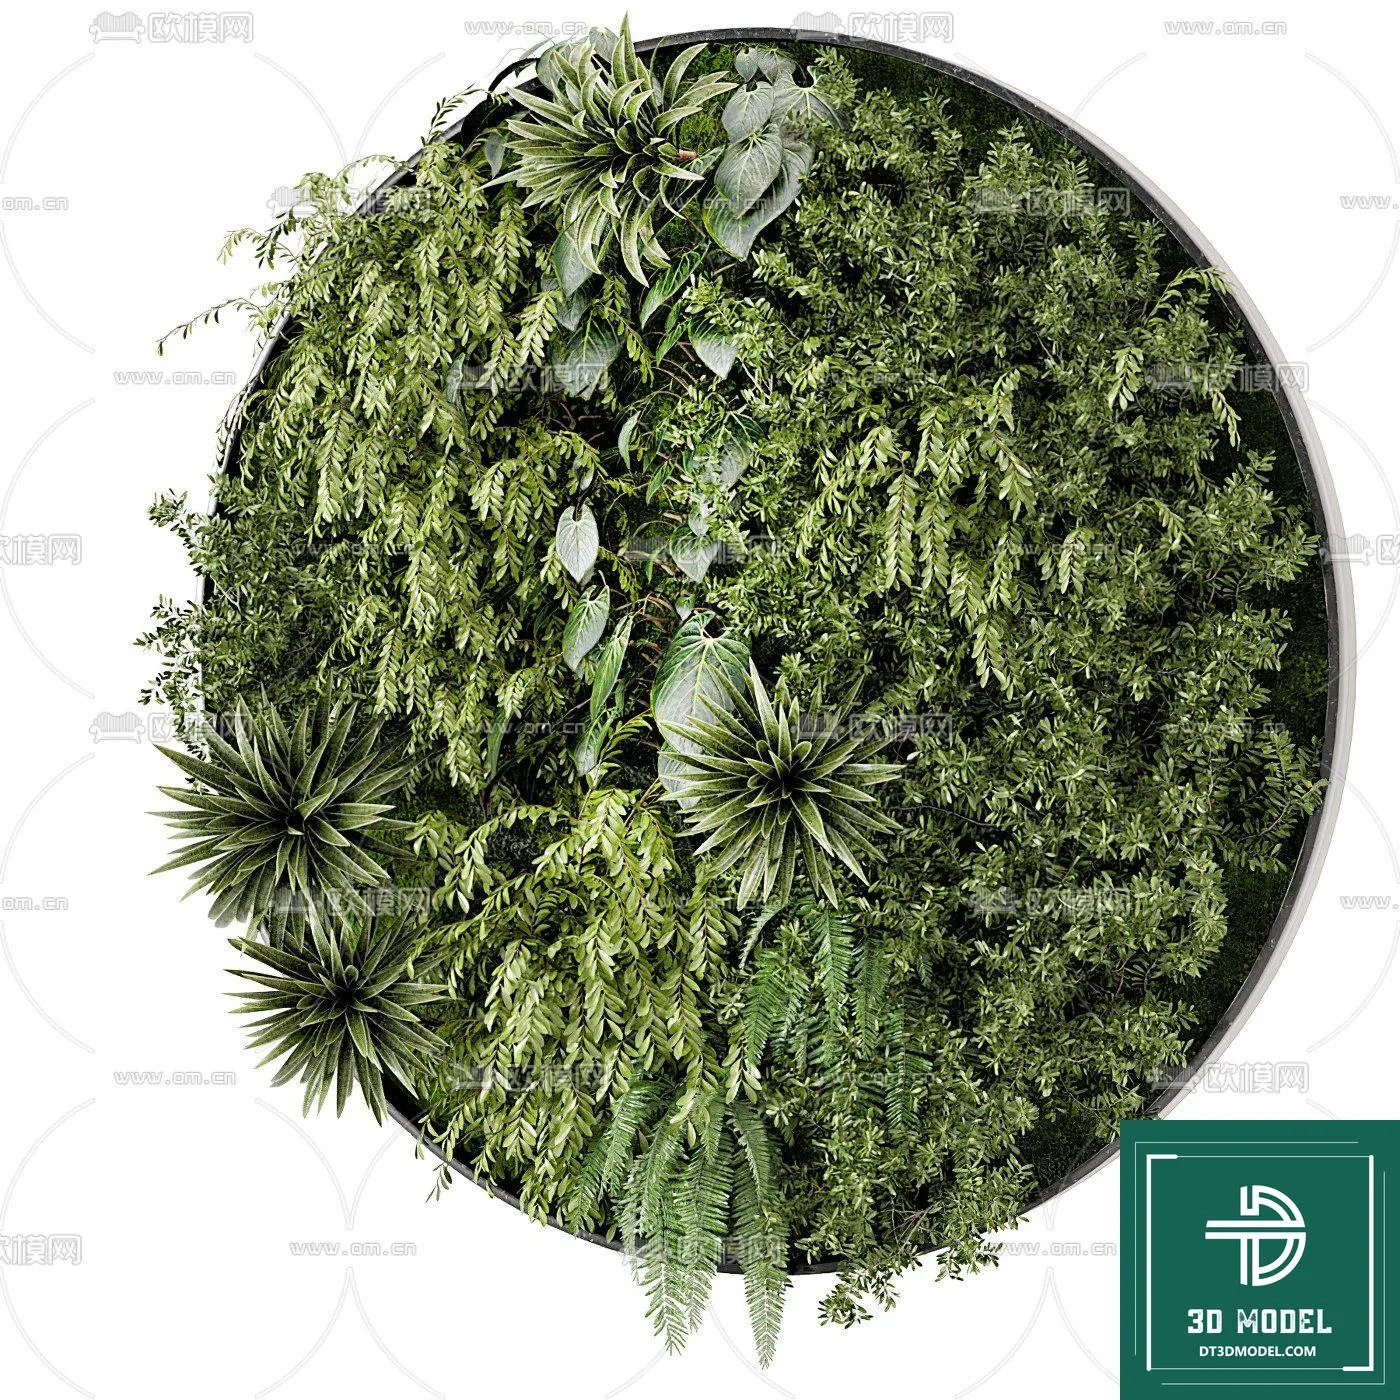 VERTICAL GARDEN – FITOWALL PLANT 3D MODEL – 134